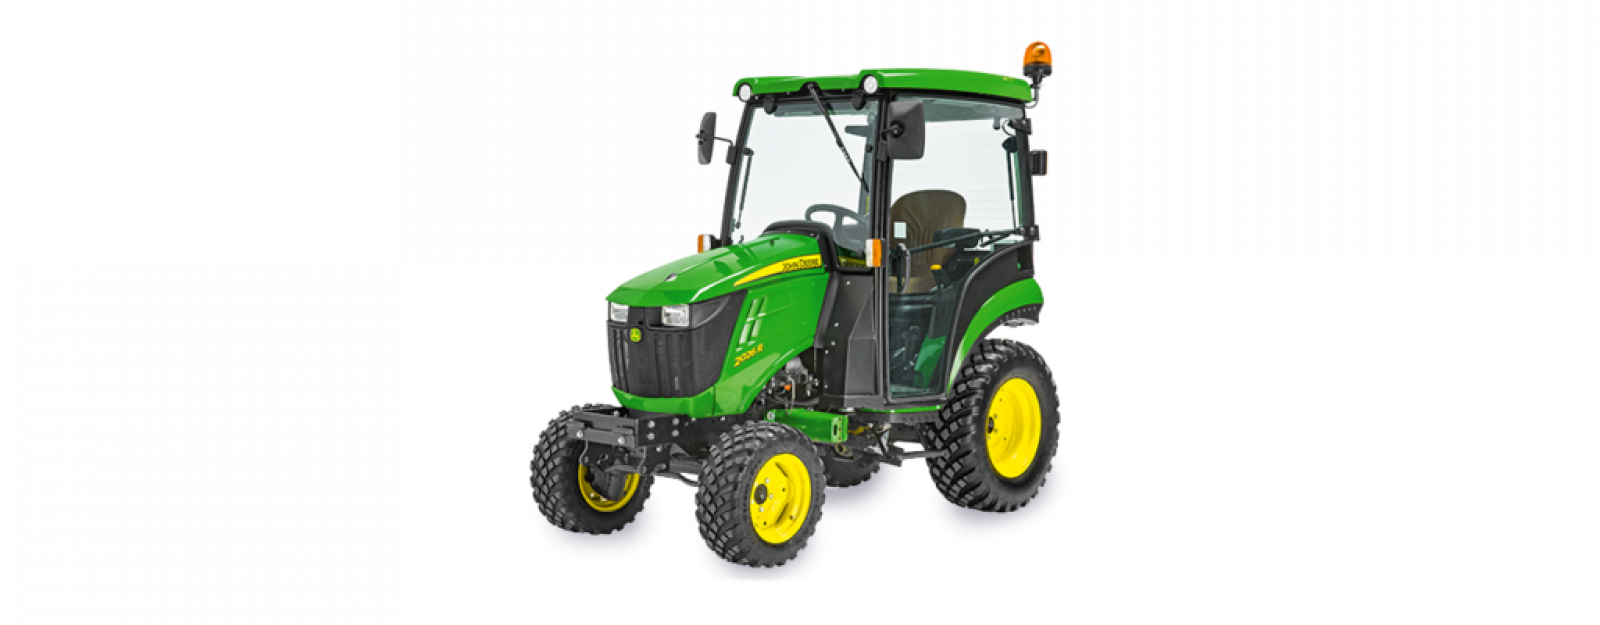 John Deere 2026R Compact Tractor